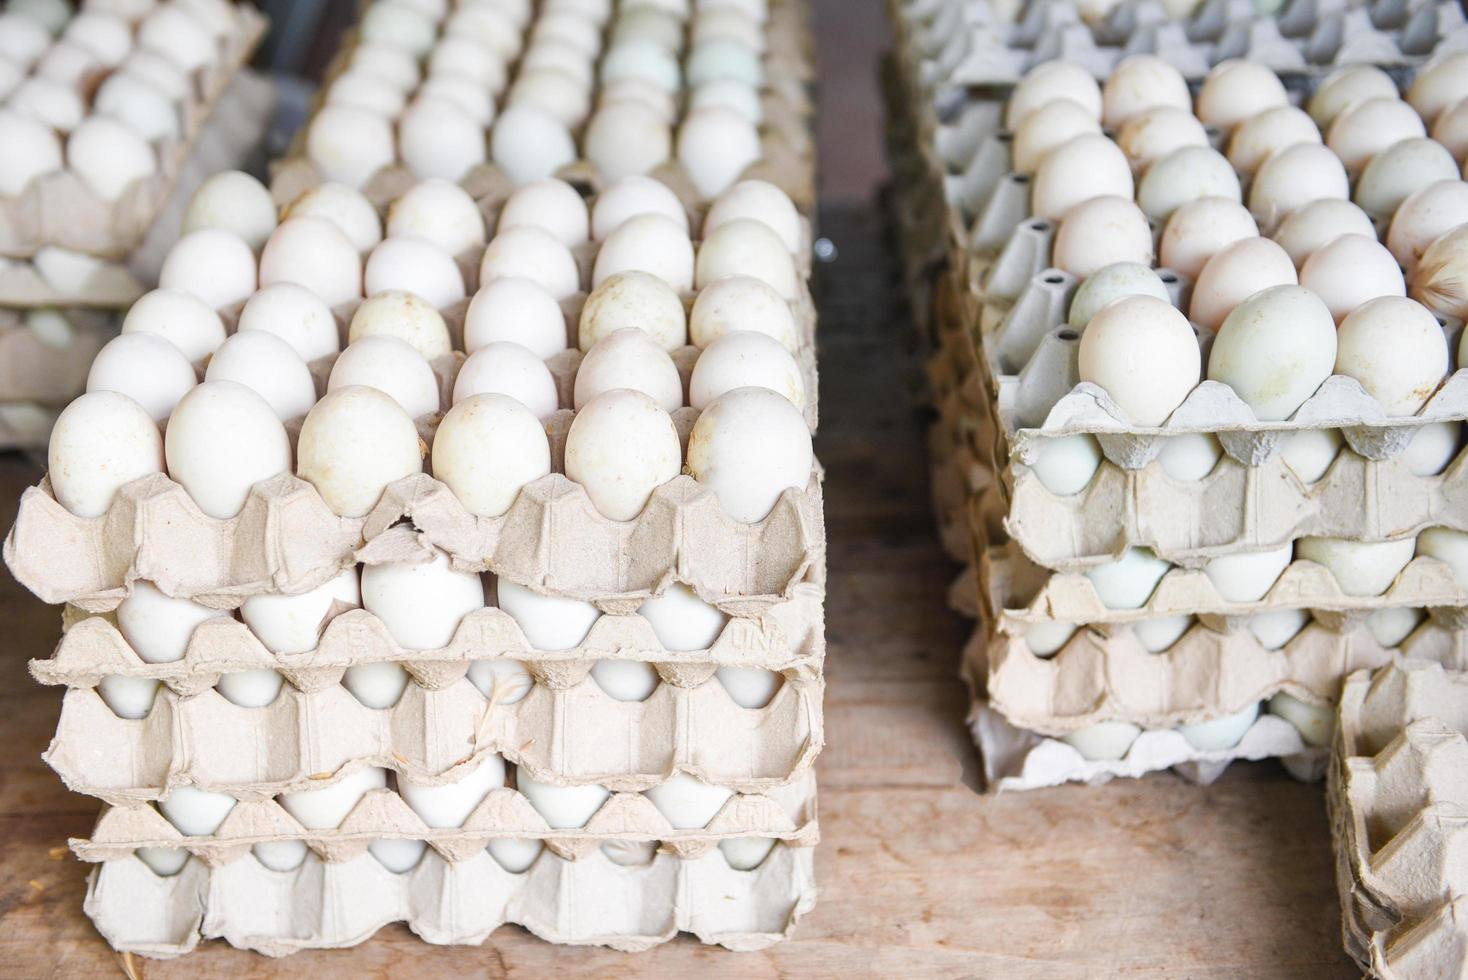 producir huevos en la granja orgánicos - huevos frescos caja de huevos de pato blanco foto